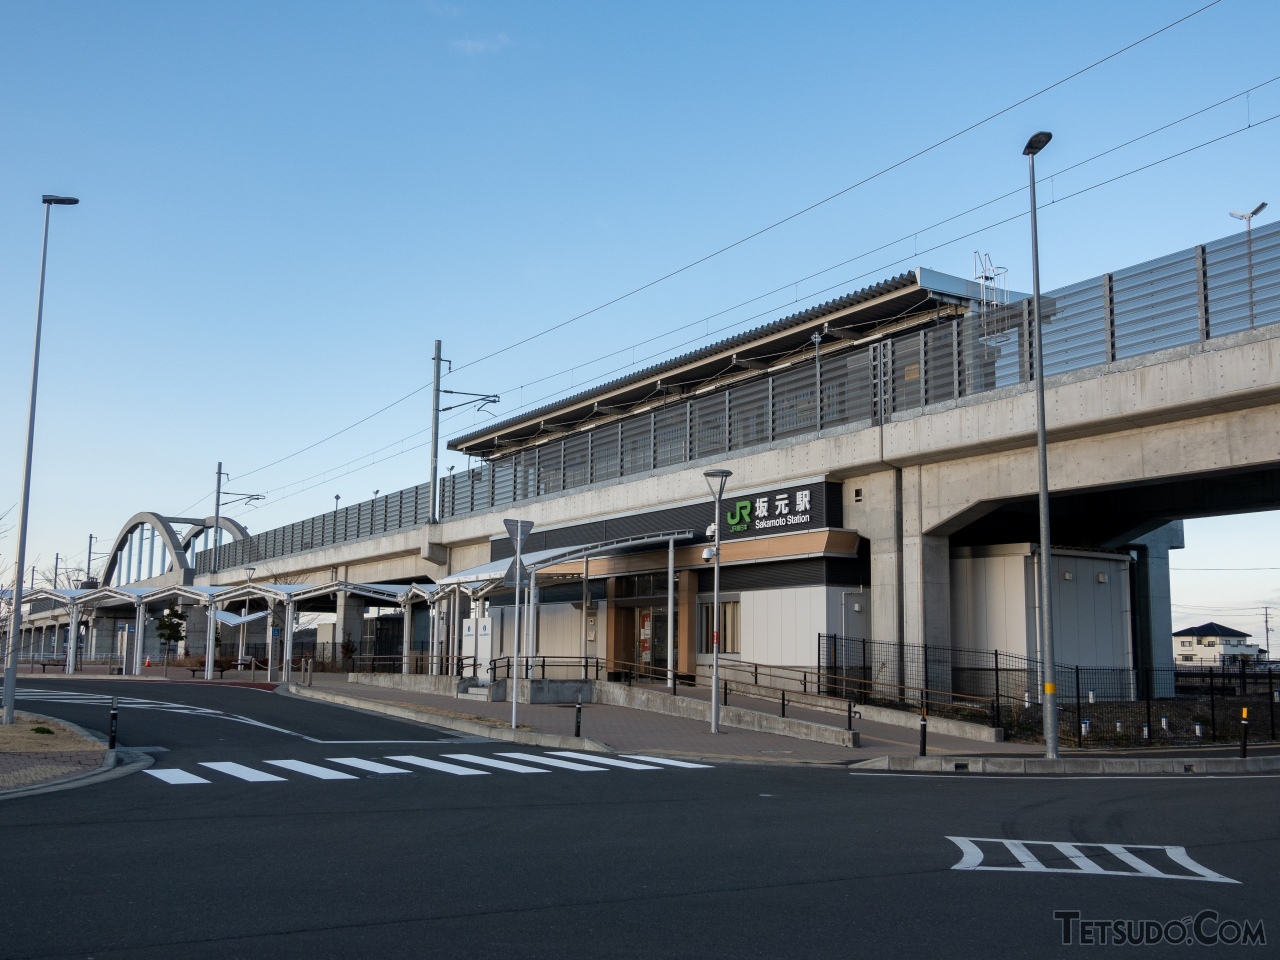 コンパクトな高架駅となった坂元駅。隣にはいちごの直売所があり食事もできる